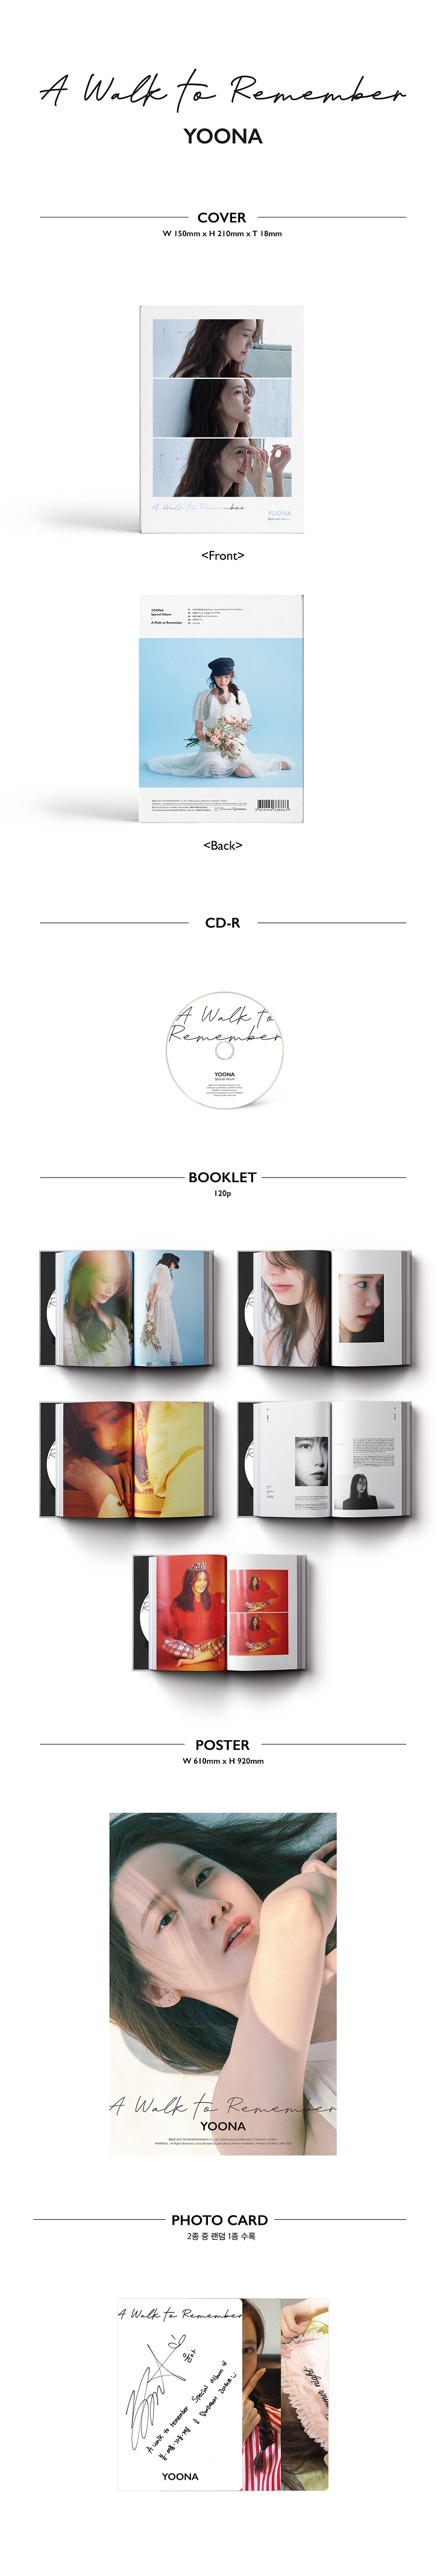 윤아(YOONA) - Special Album A WALK TO REMEMBER